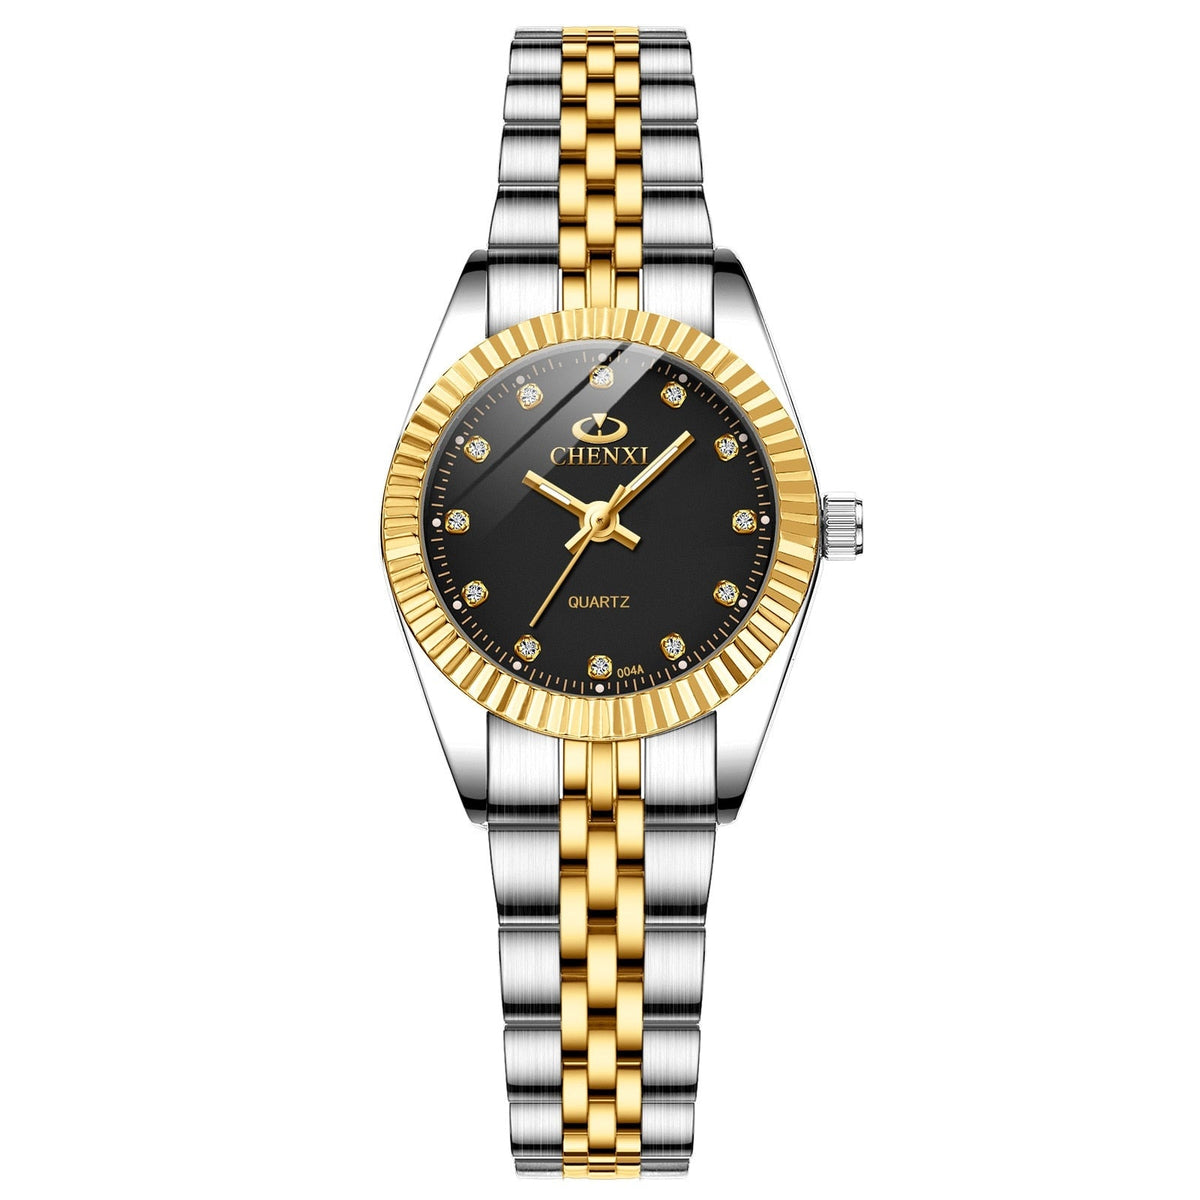 "Relógio Feminino Elegante Banhado a Ouro 18k com Design Sofisticado